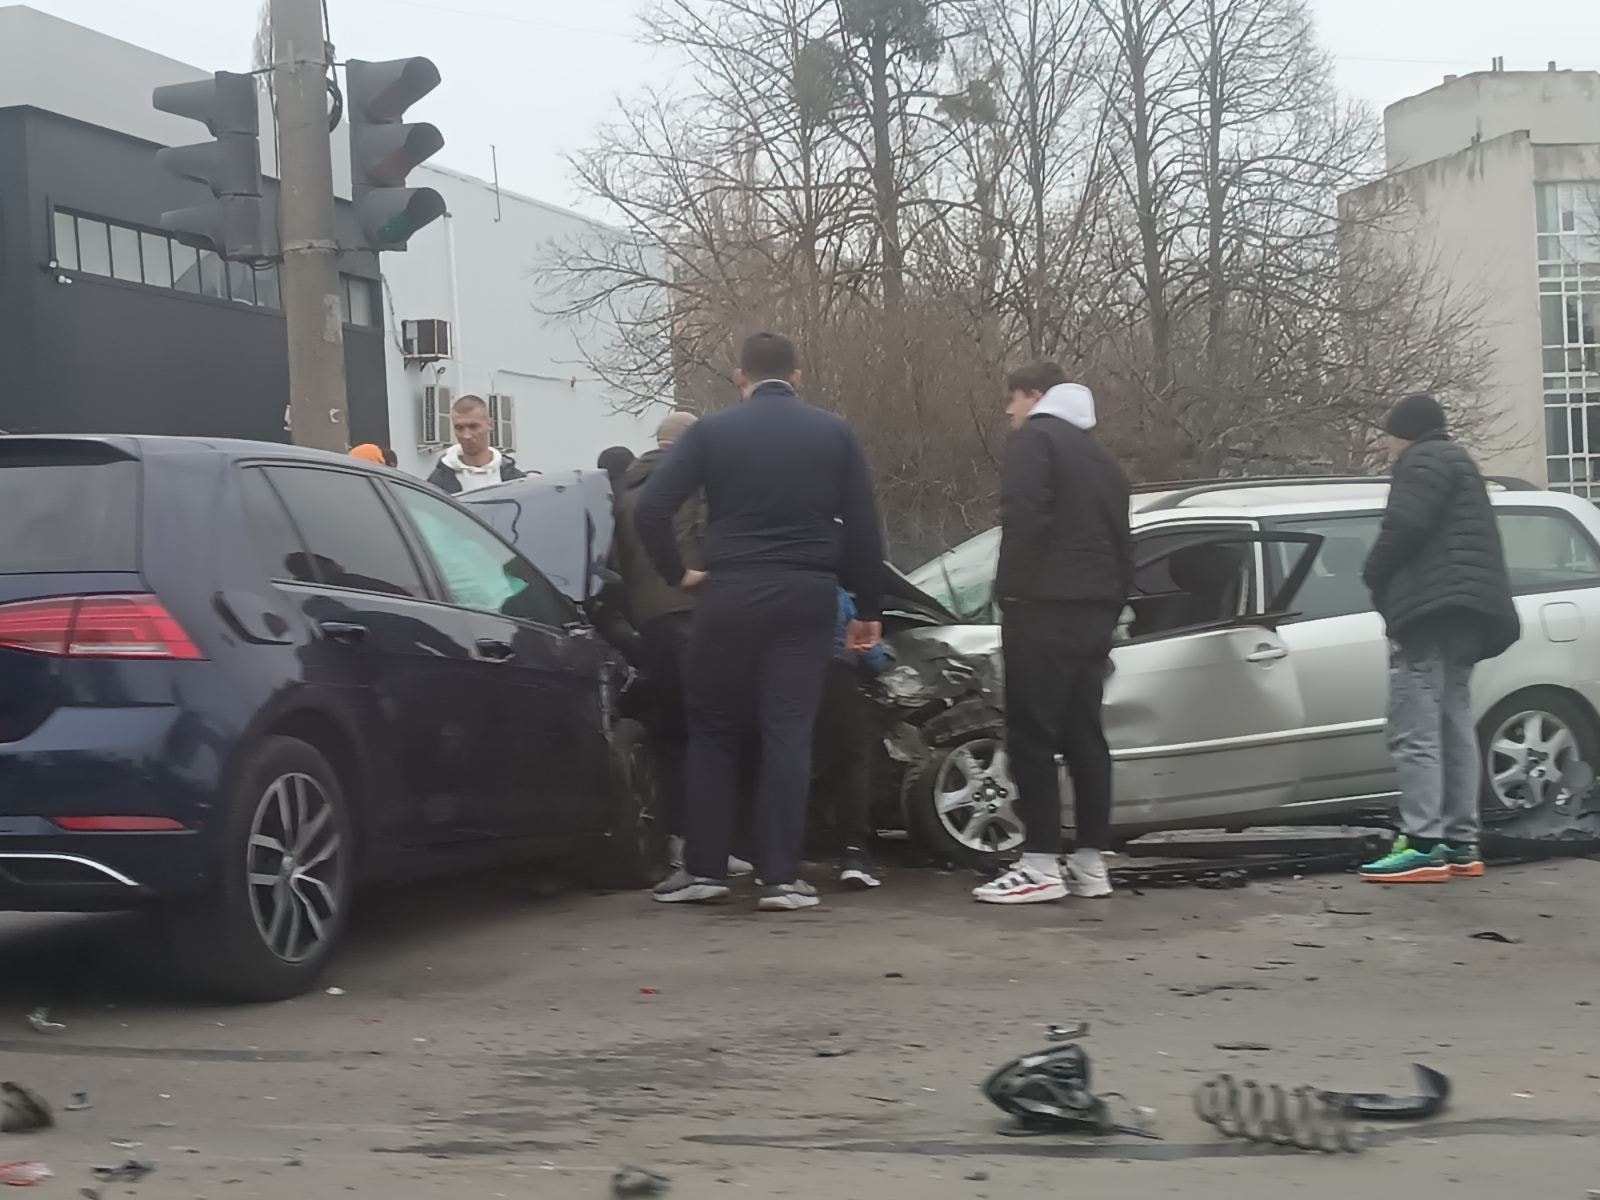 (ФОТО, ВИДЕО) В Кишиневе столкнулись три автомобиля. Есть пострадавшие